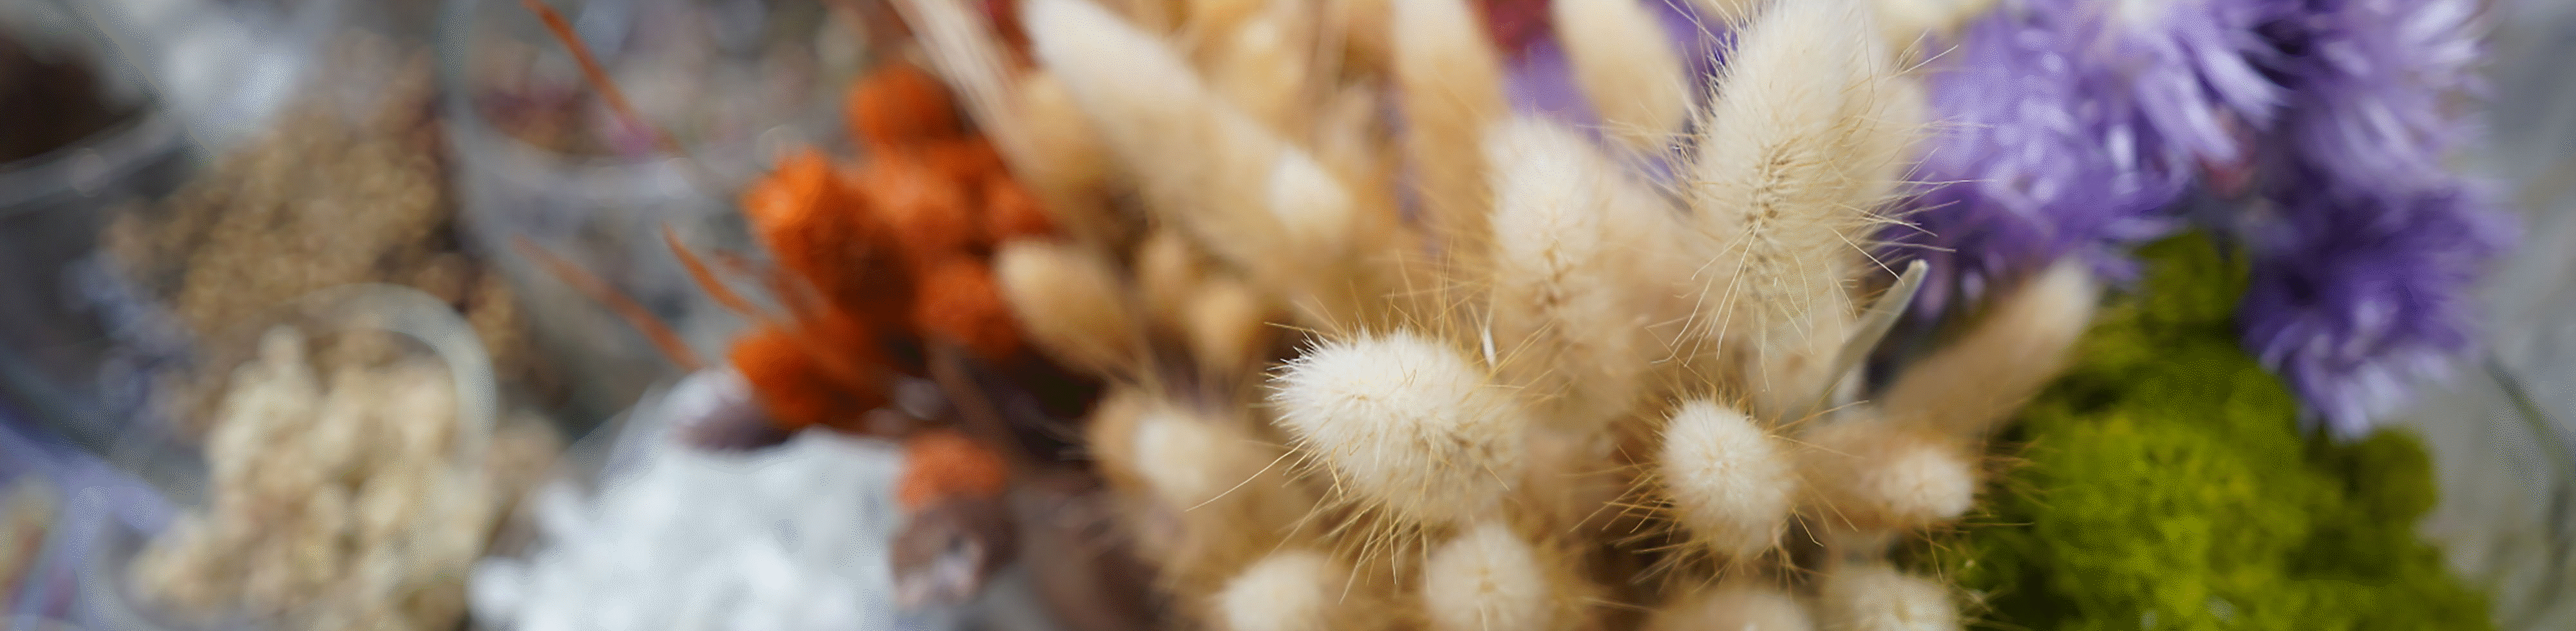 צילום תקריב של עשב בעל זיפים וזרי פרחים אחרים